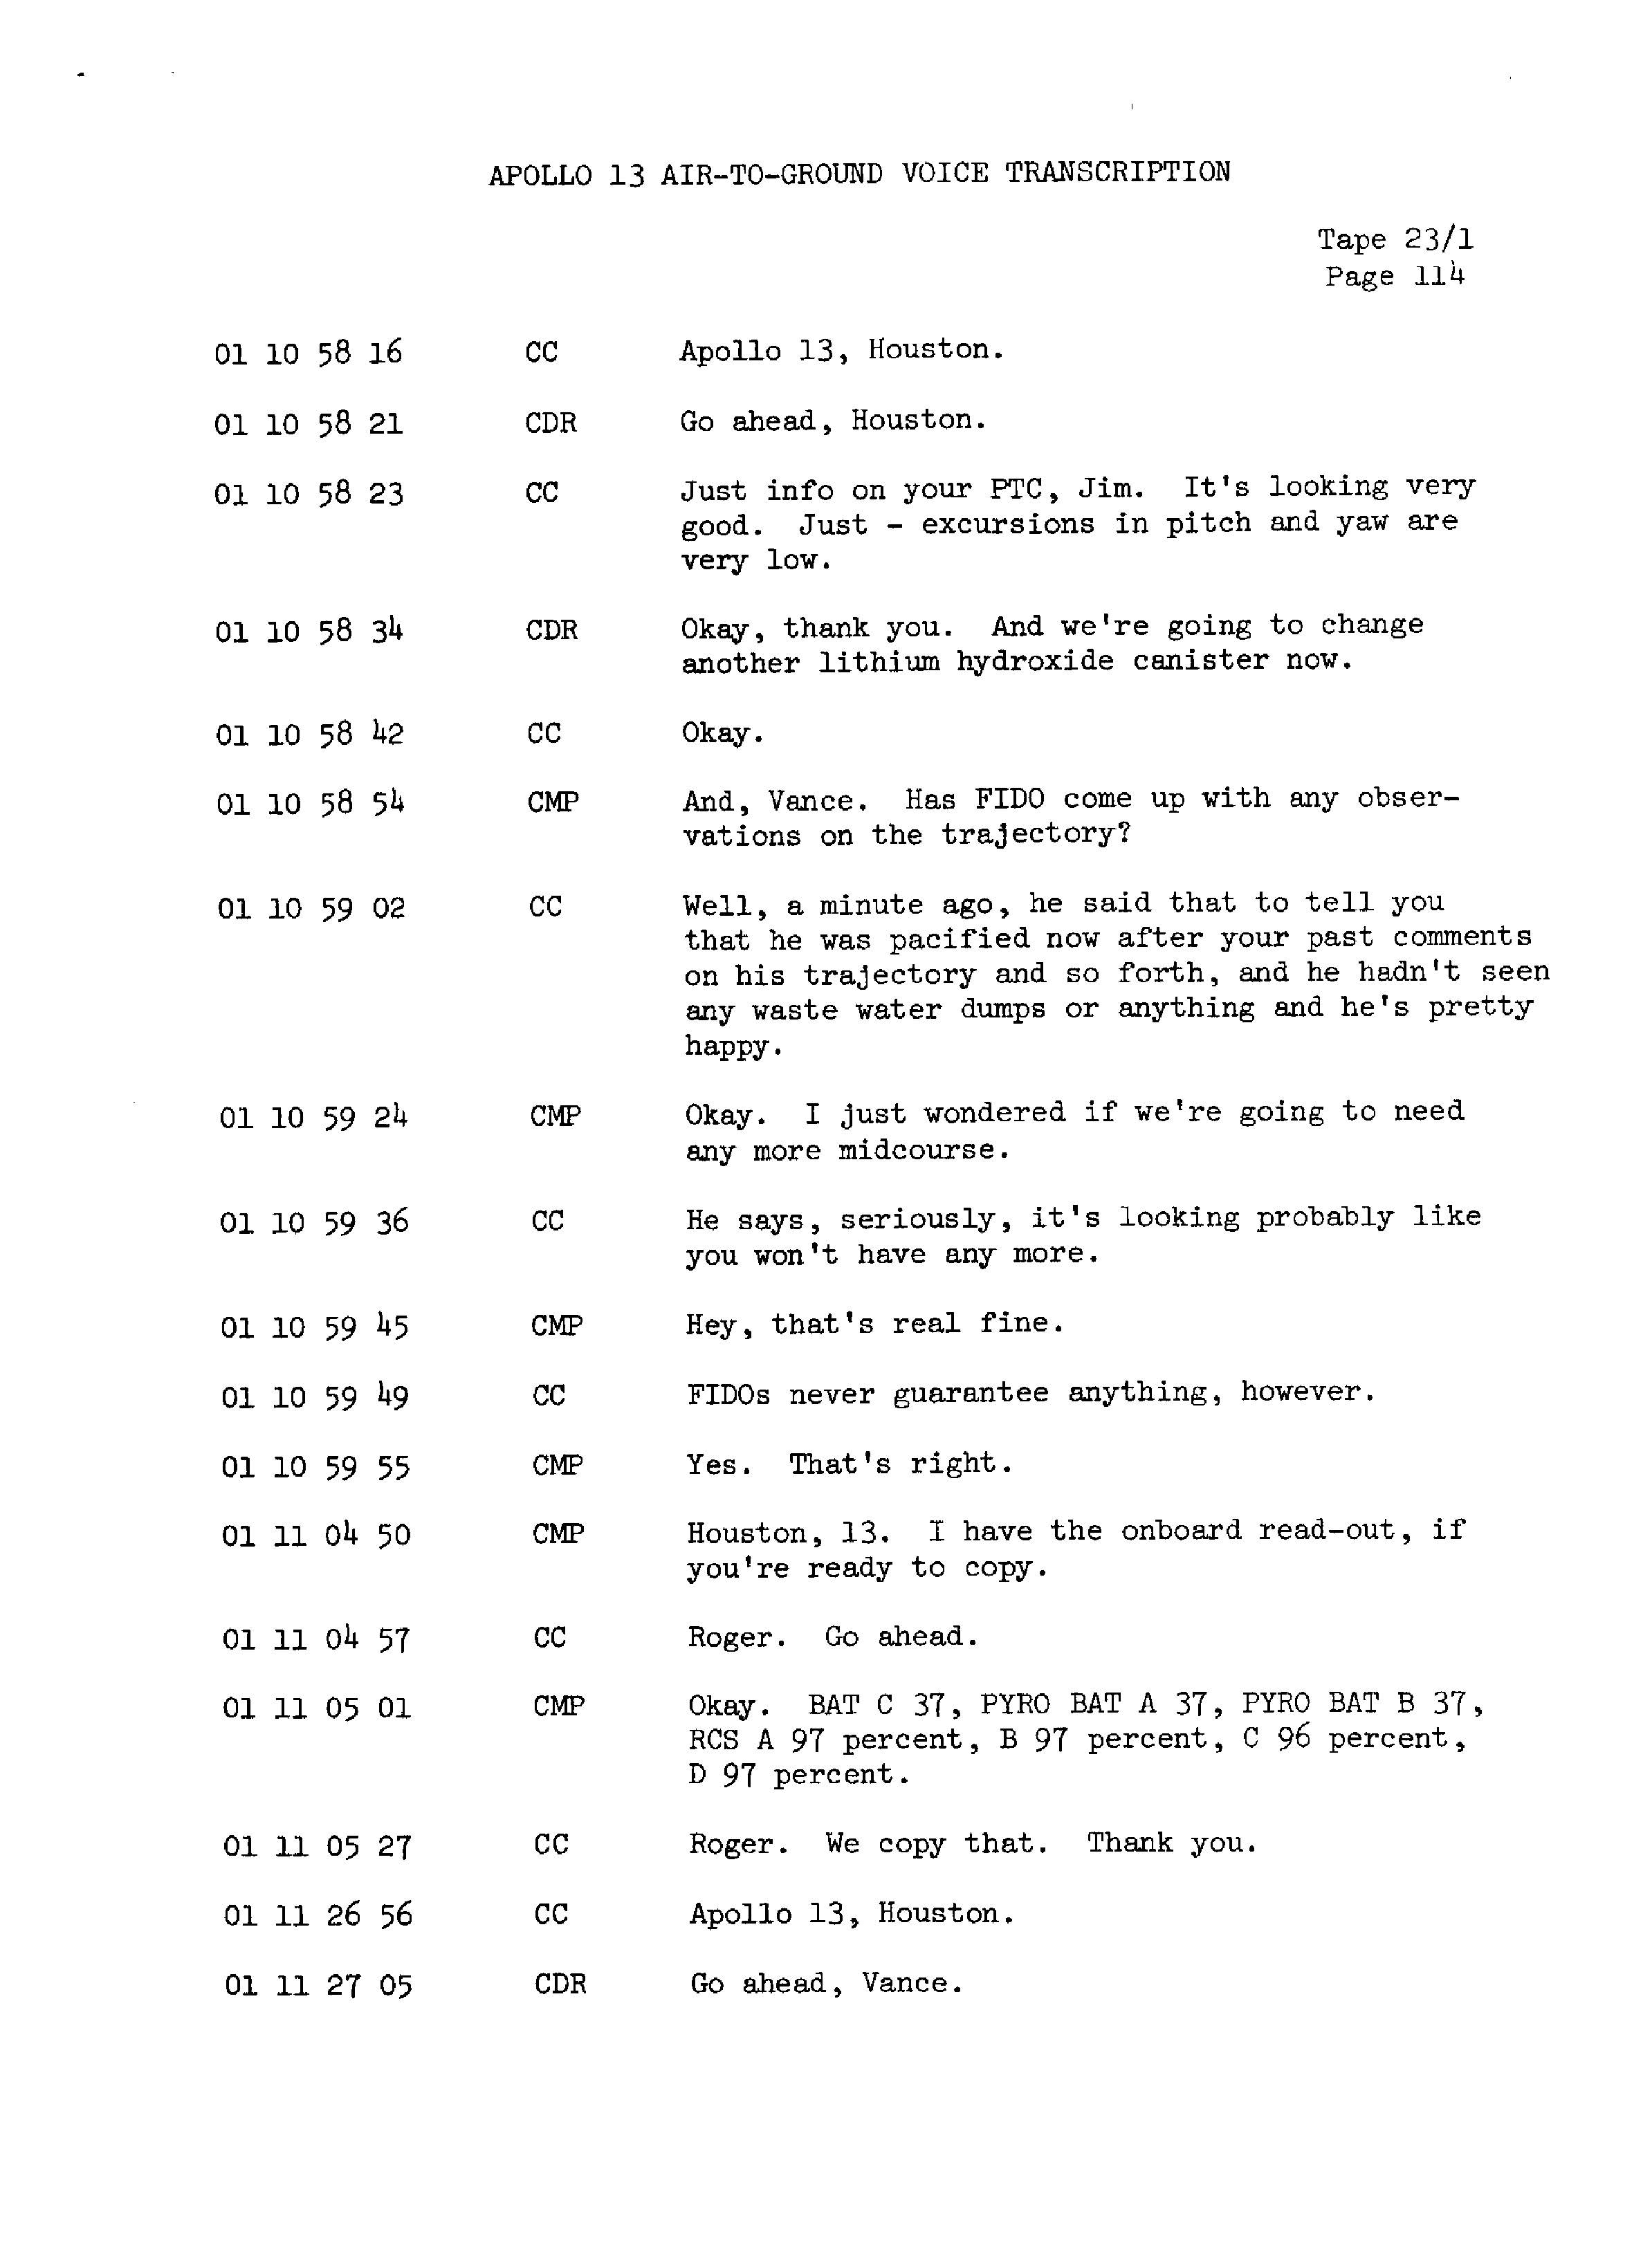 Page 121 of Apollo 13’s original transcript